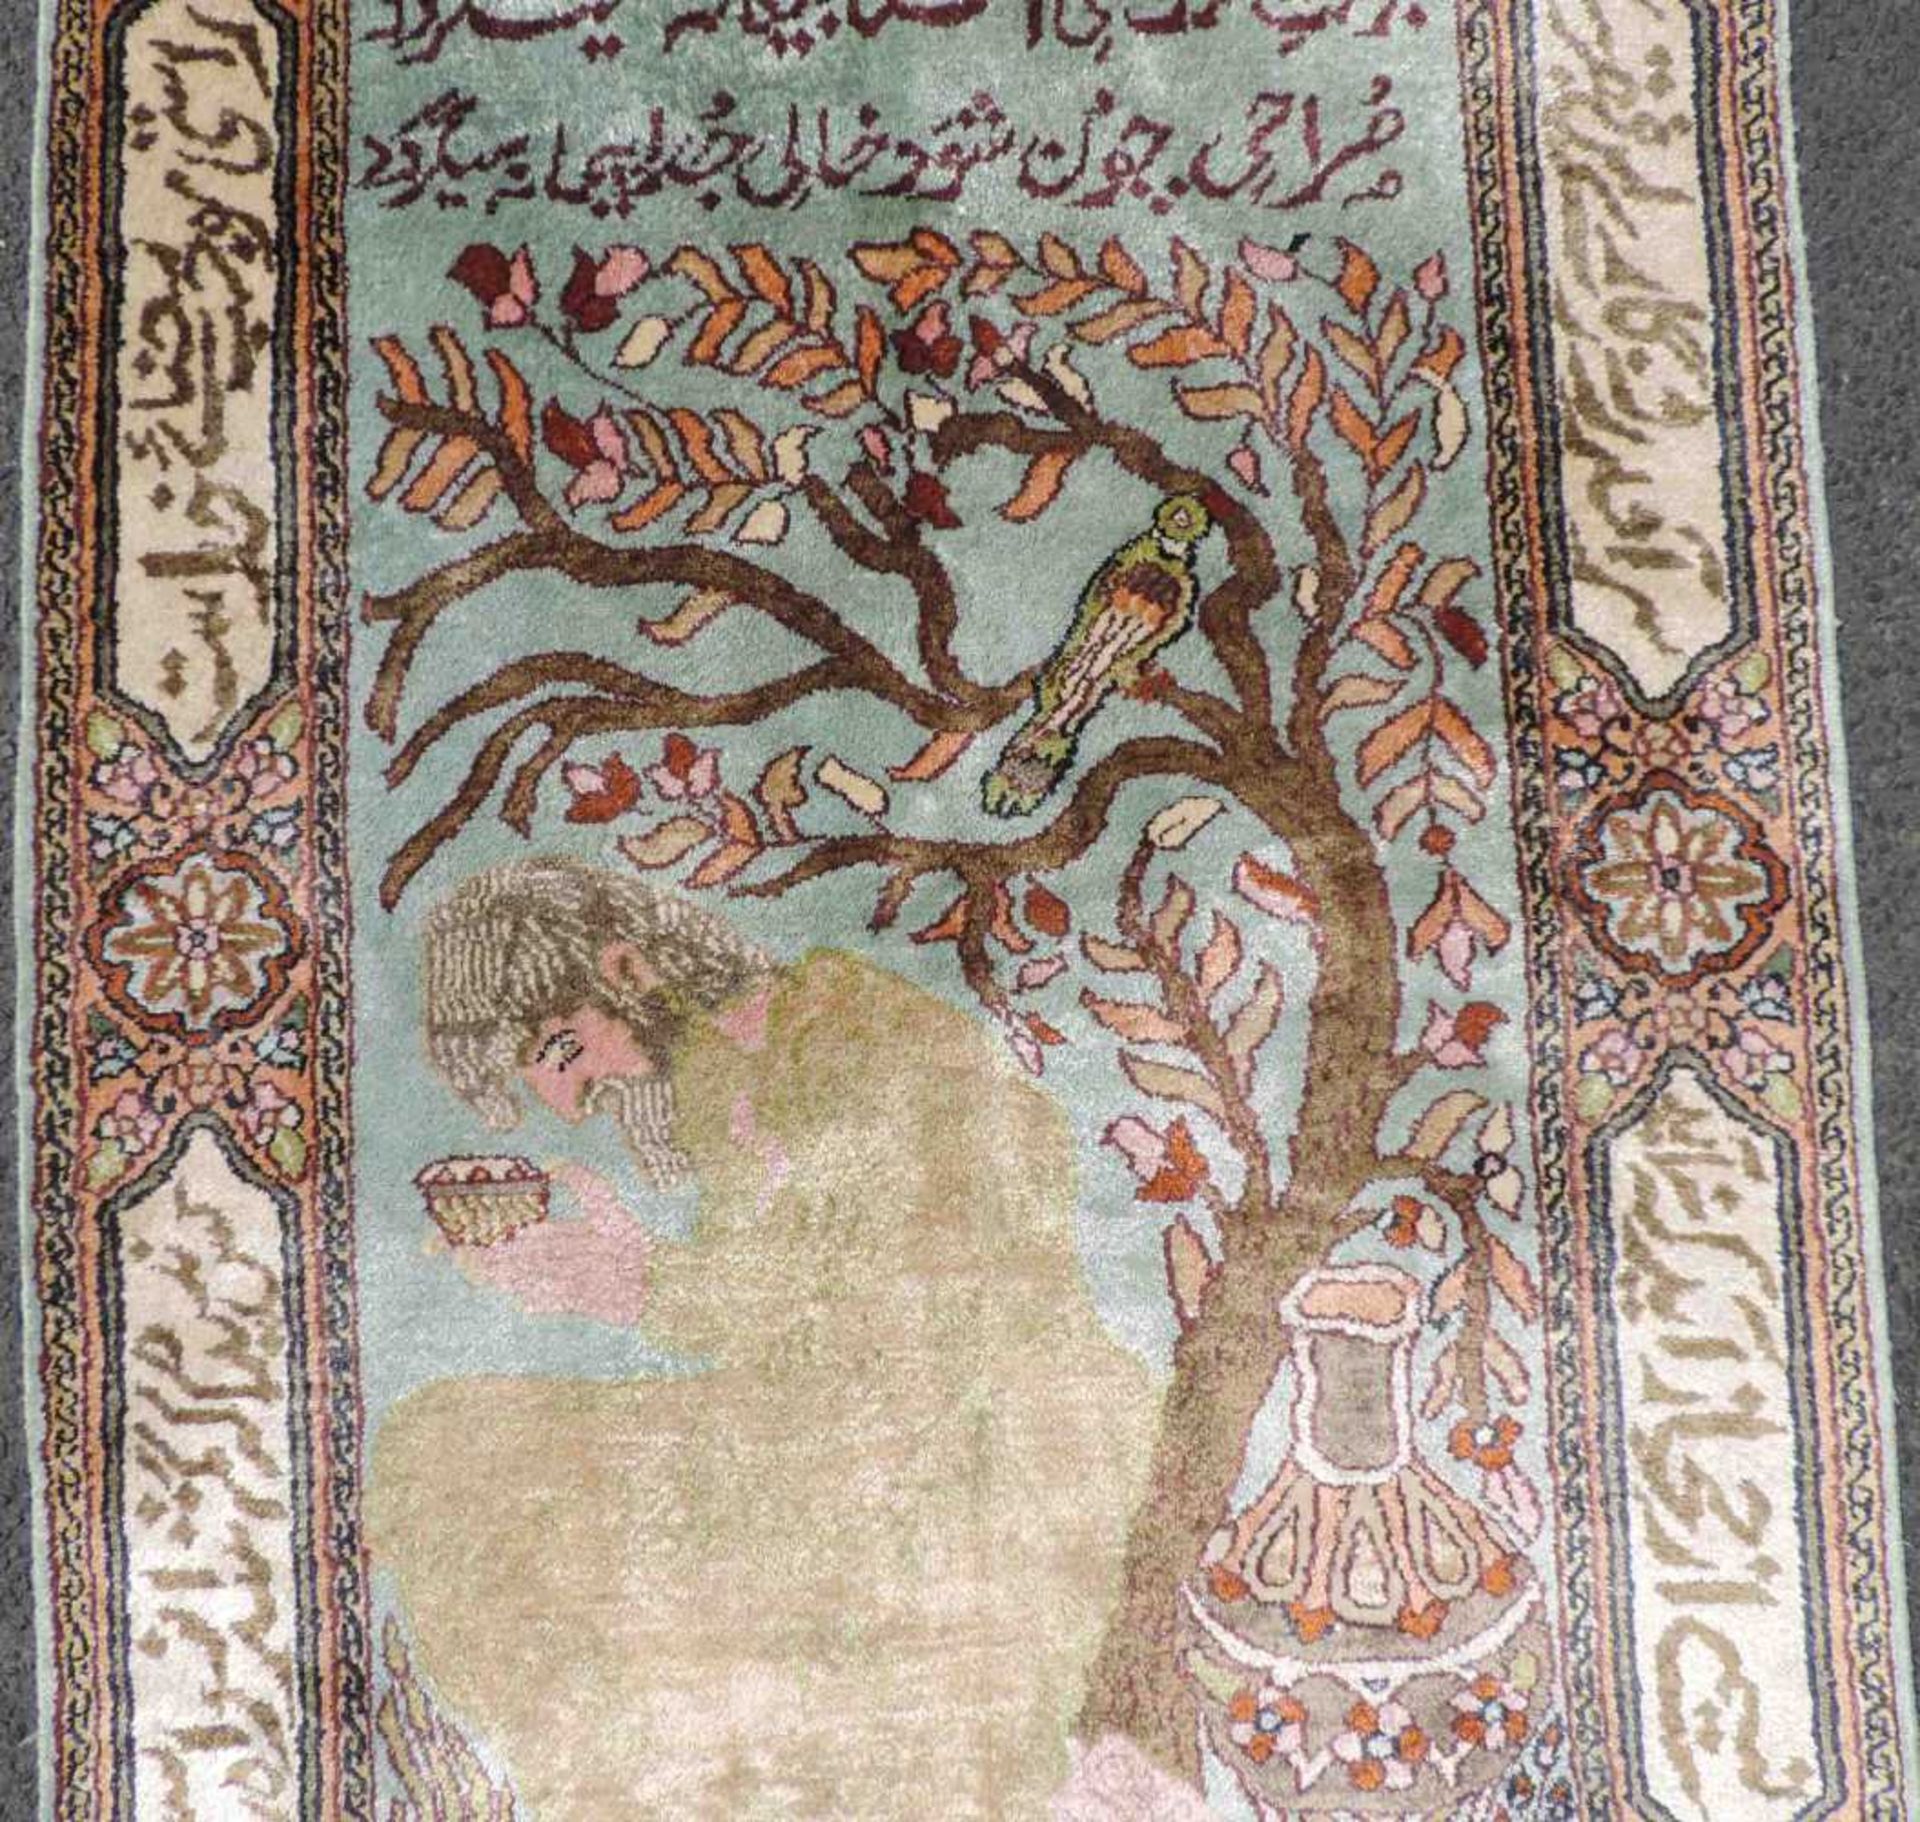 Feiner Bildteppich Seide. Kaschmir, Indien. 95 cm x 65 cm. Handgeknüpft. Flor reine Seide. Guter - Bild 3 aus 7